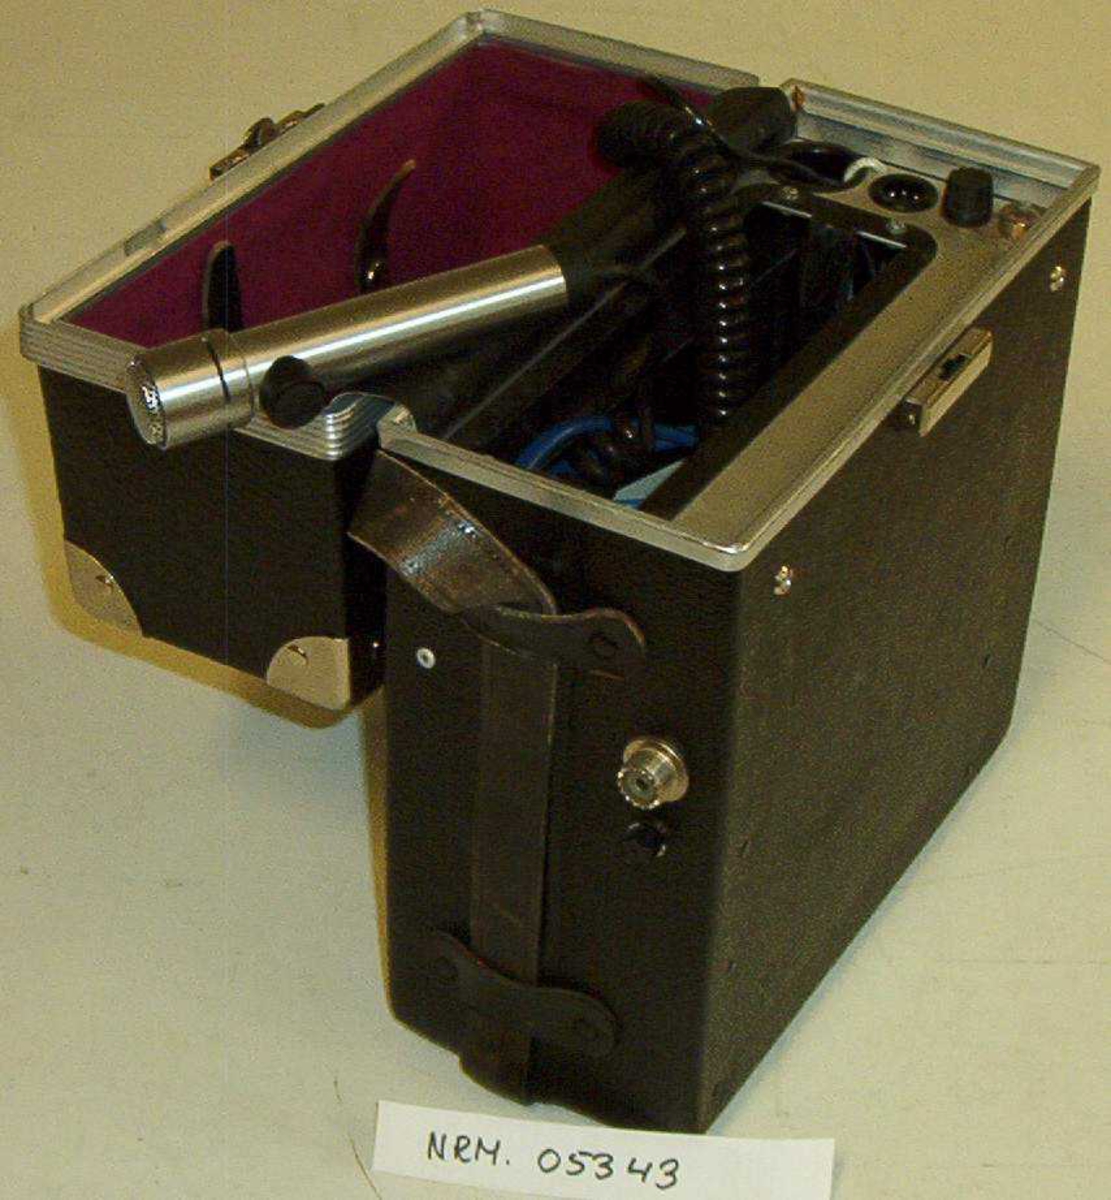 Transportkoffert for politiradio type Sonab MR3016NP,
med fast mikrofon.
Hører sammen med politiradio NRM.05342.

Inneholder 2 bruksanvisninger Sonab MR3016NP i kofferten, samt Regler for bruk av politiets radiosamband GP 4361